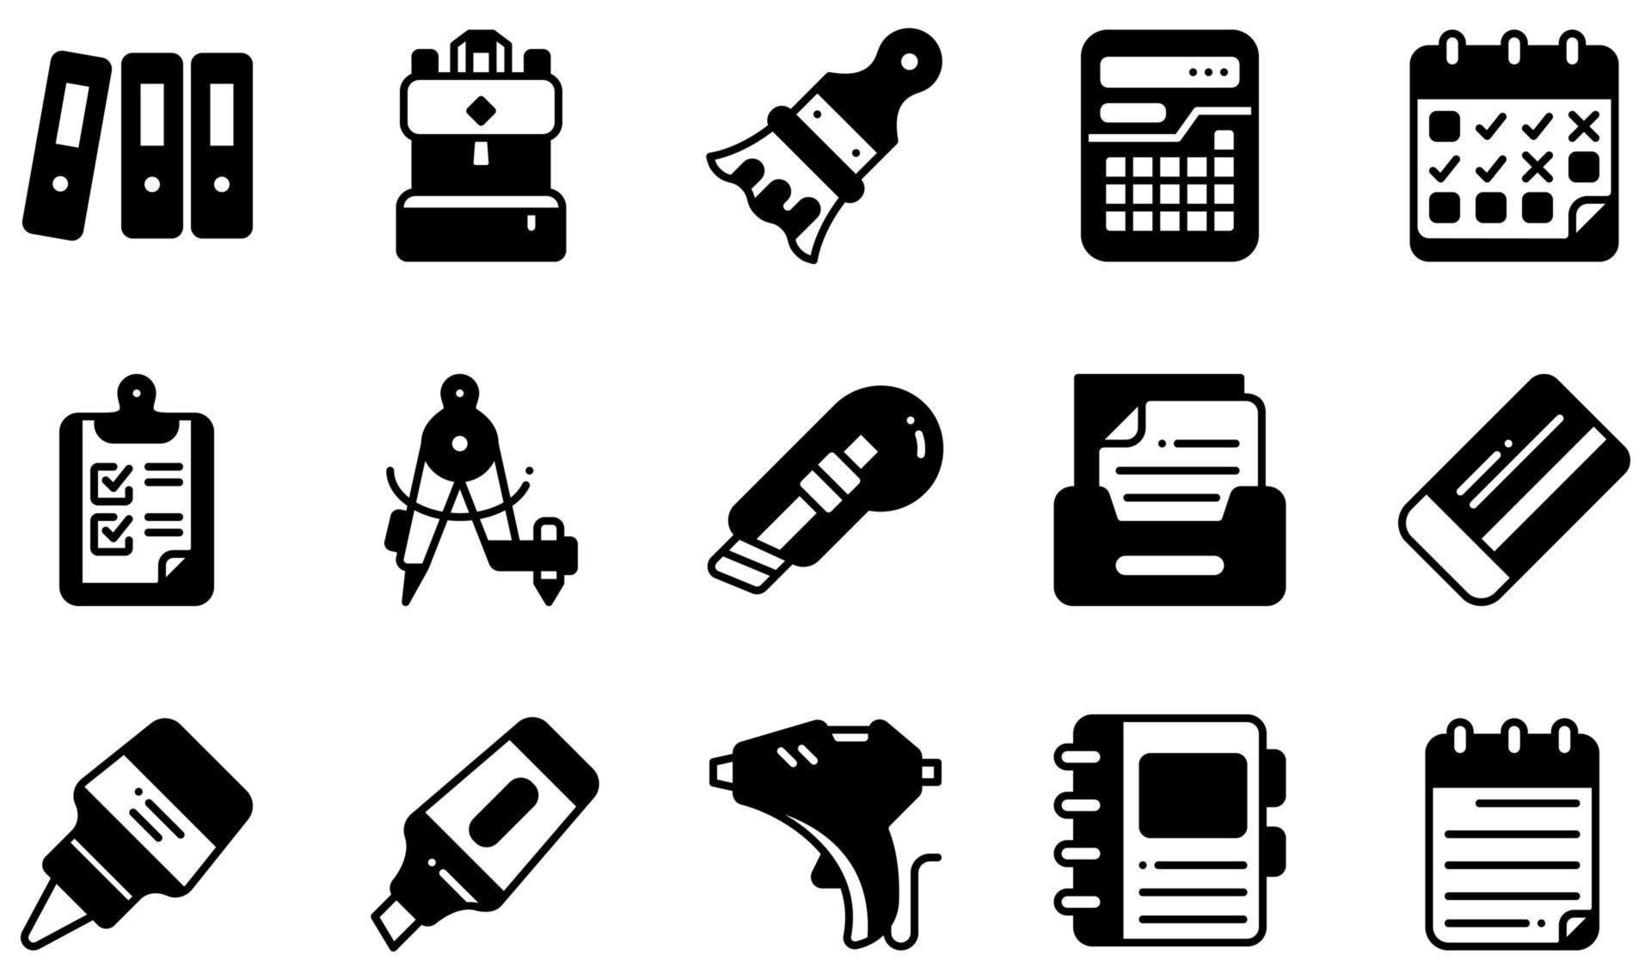 conjunto de iconos vectoriales relacionados con papelería. contiene íconos como archivos, mochila, calculadora, portapapeles, cortador, pegamento y más. vector